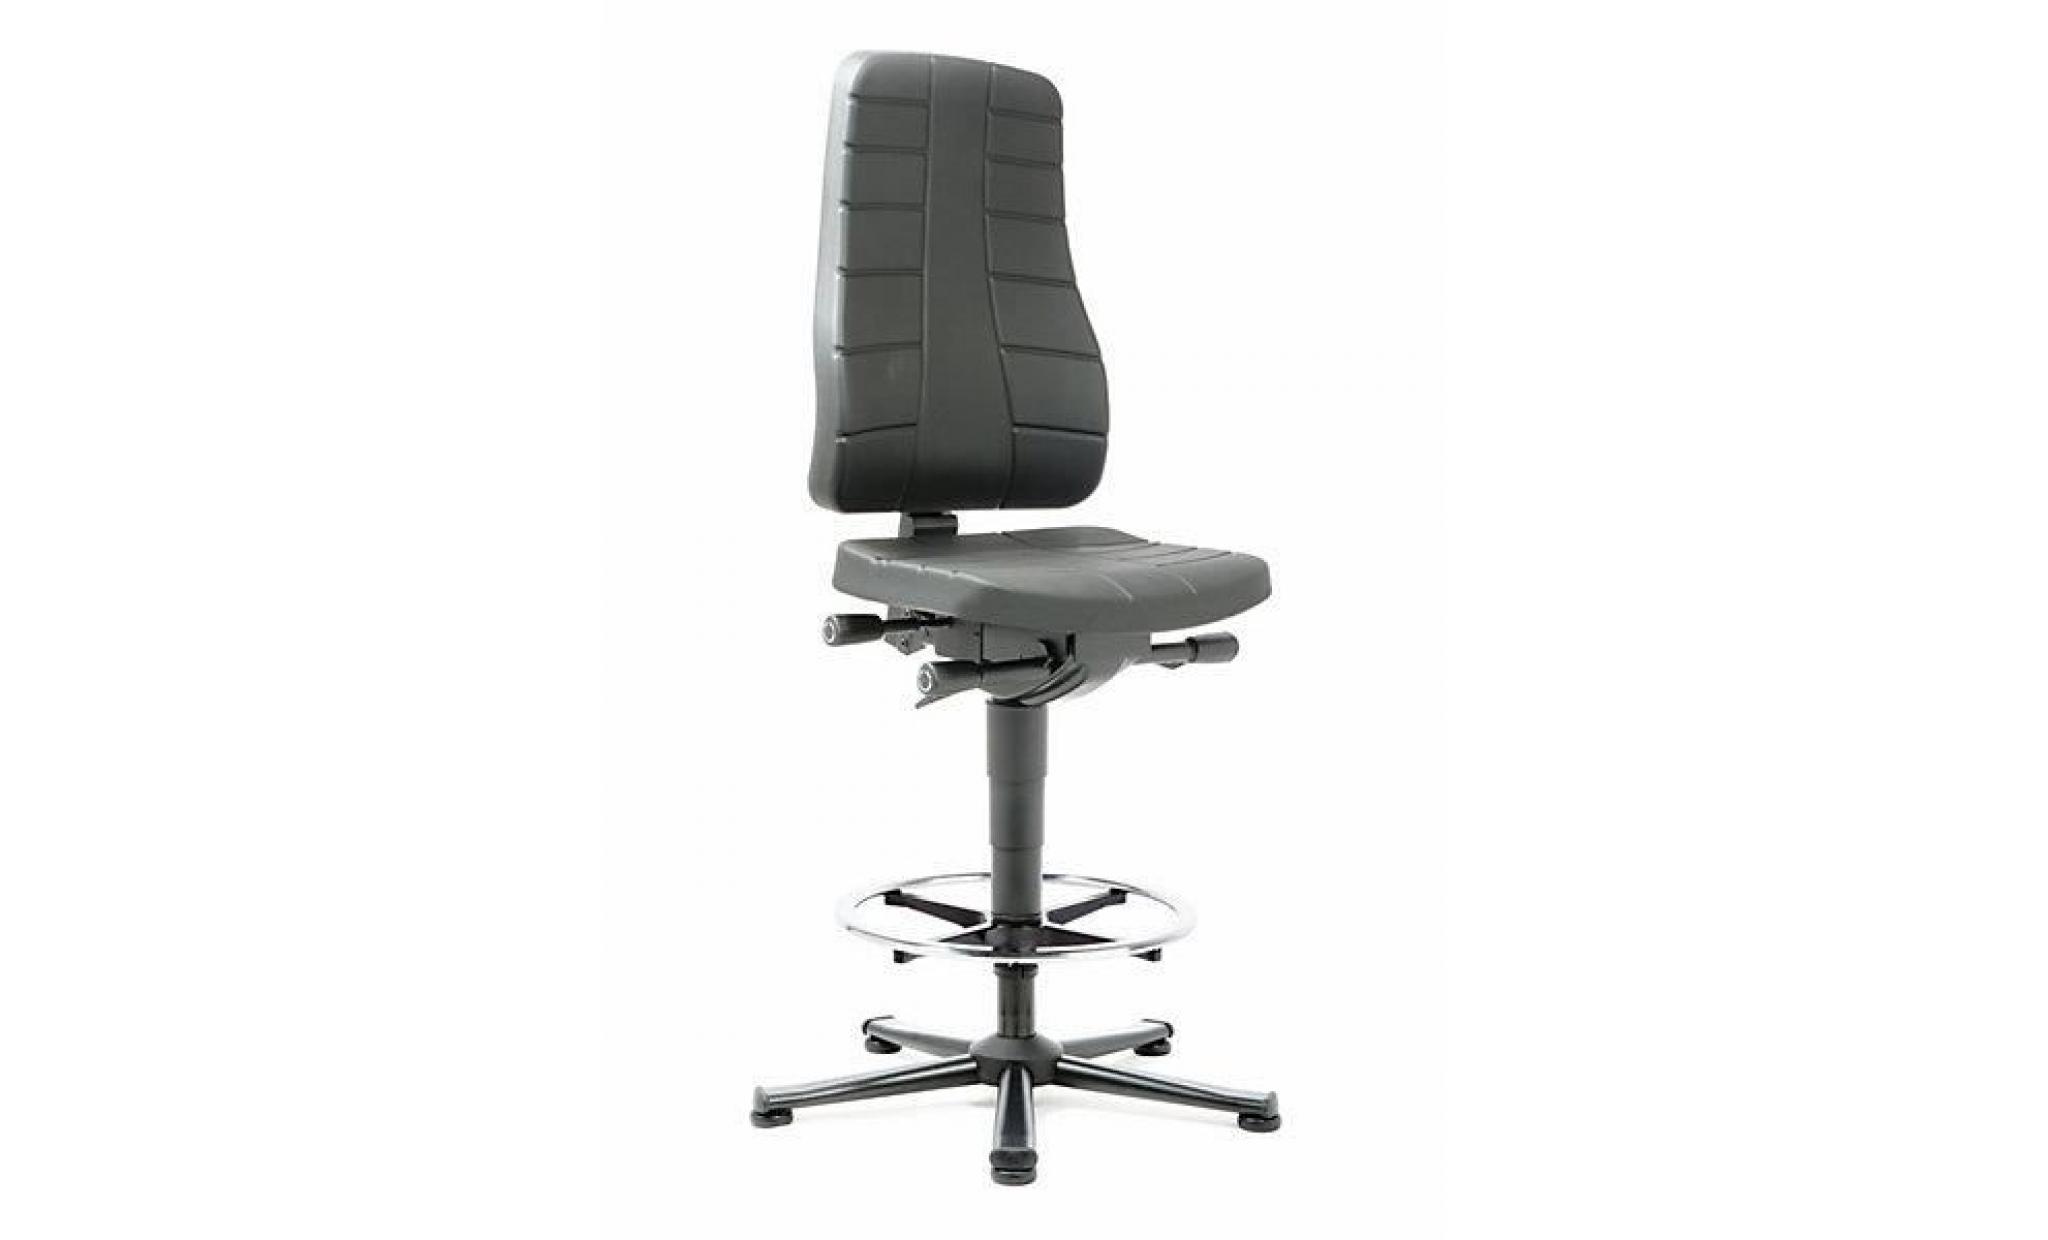 bimos siège d'atelier à fonctions ergonomiques   avec patins pu noir   chaise chaise d'atelier chaises chaises d'atelier